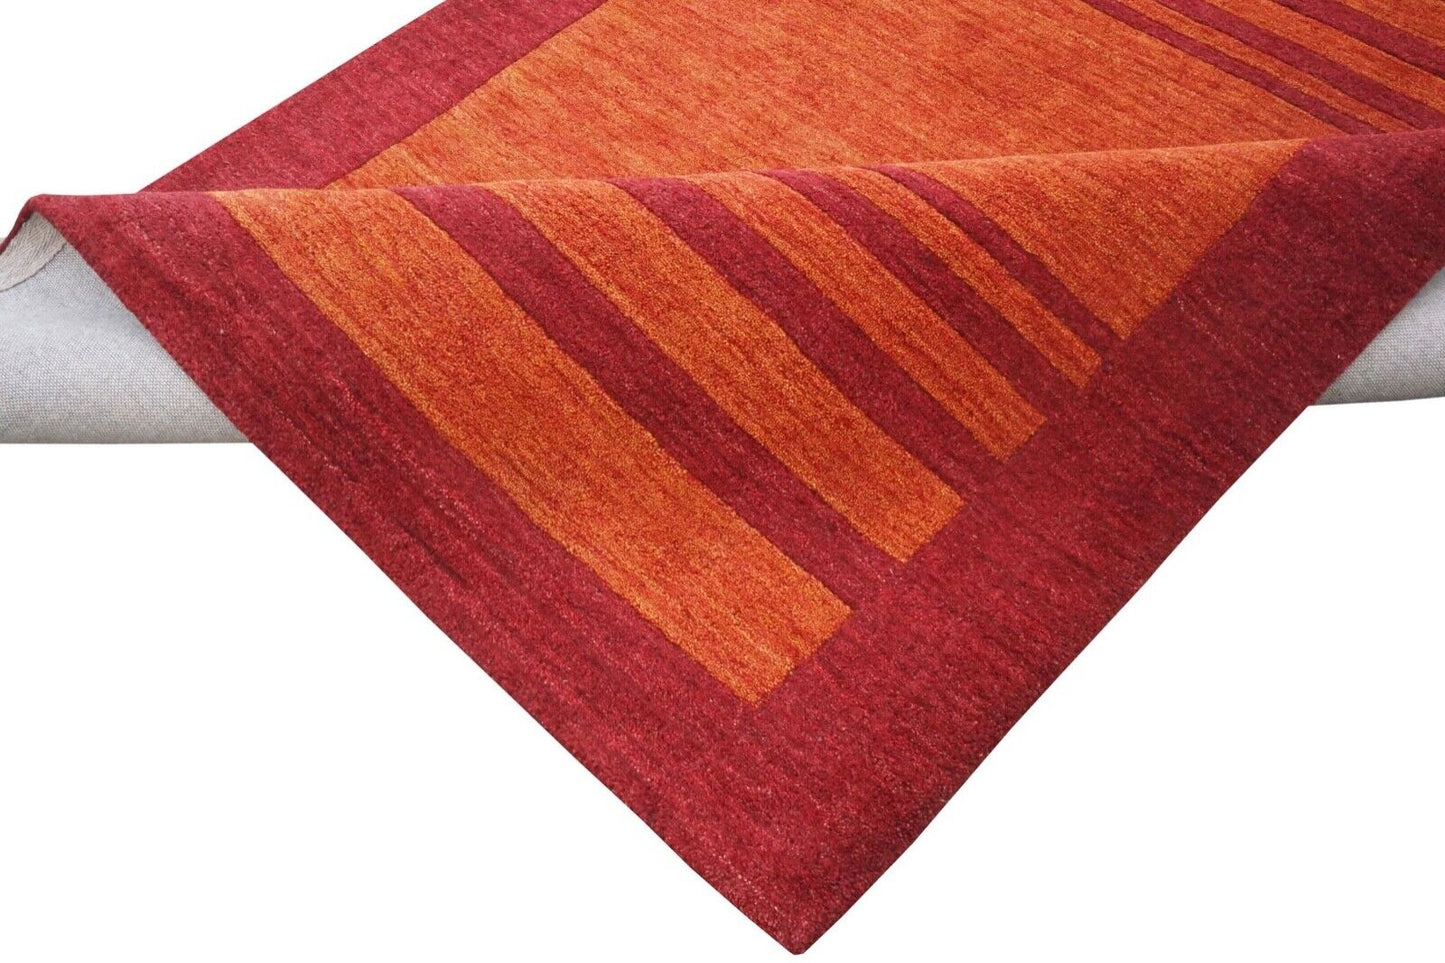 Rot Orange140X200 cm Teppich 100% Wolle Orientteppich Handgetuftet HT578